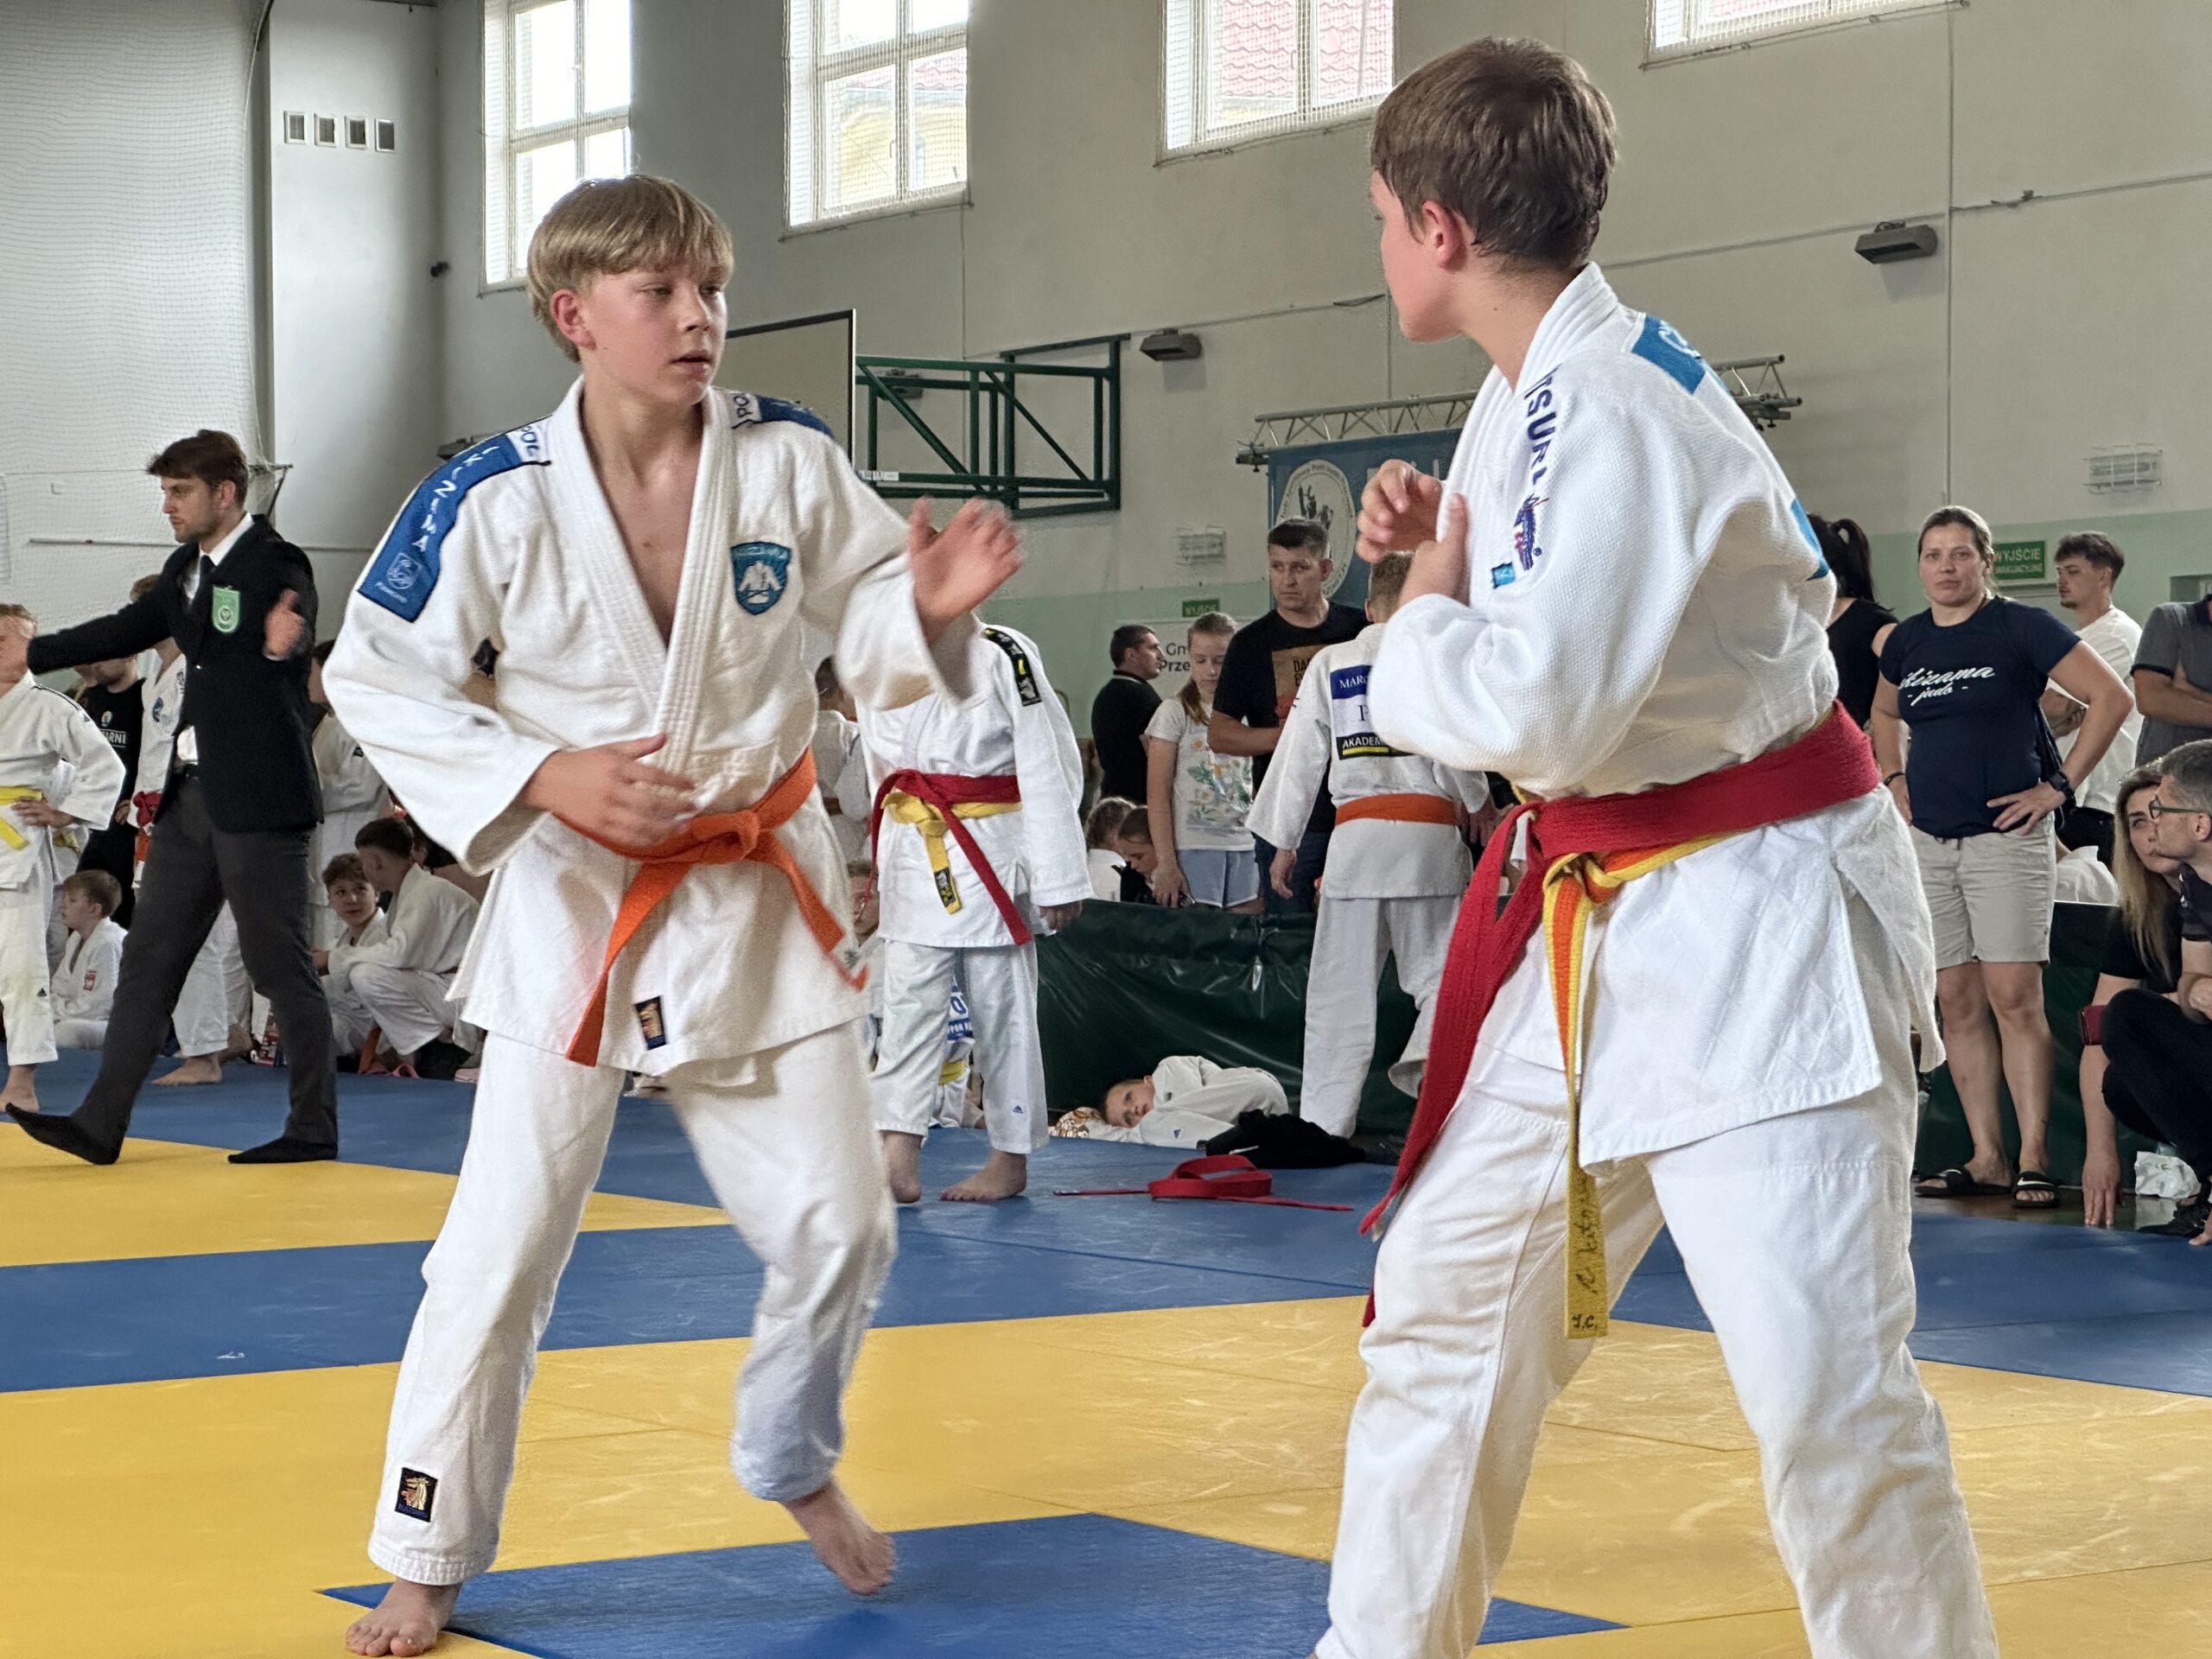 Zdjęcie przedstawia moment walki podczas turnieju dwóch chłopców.